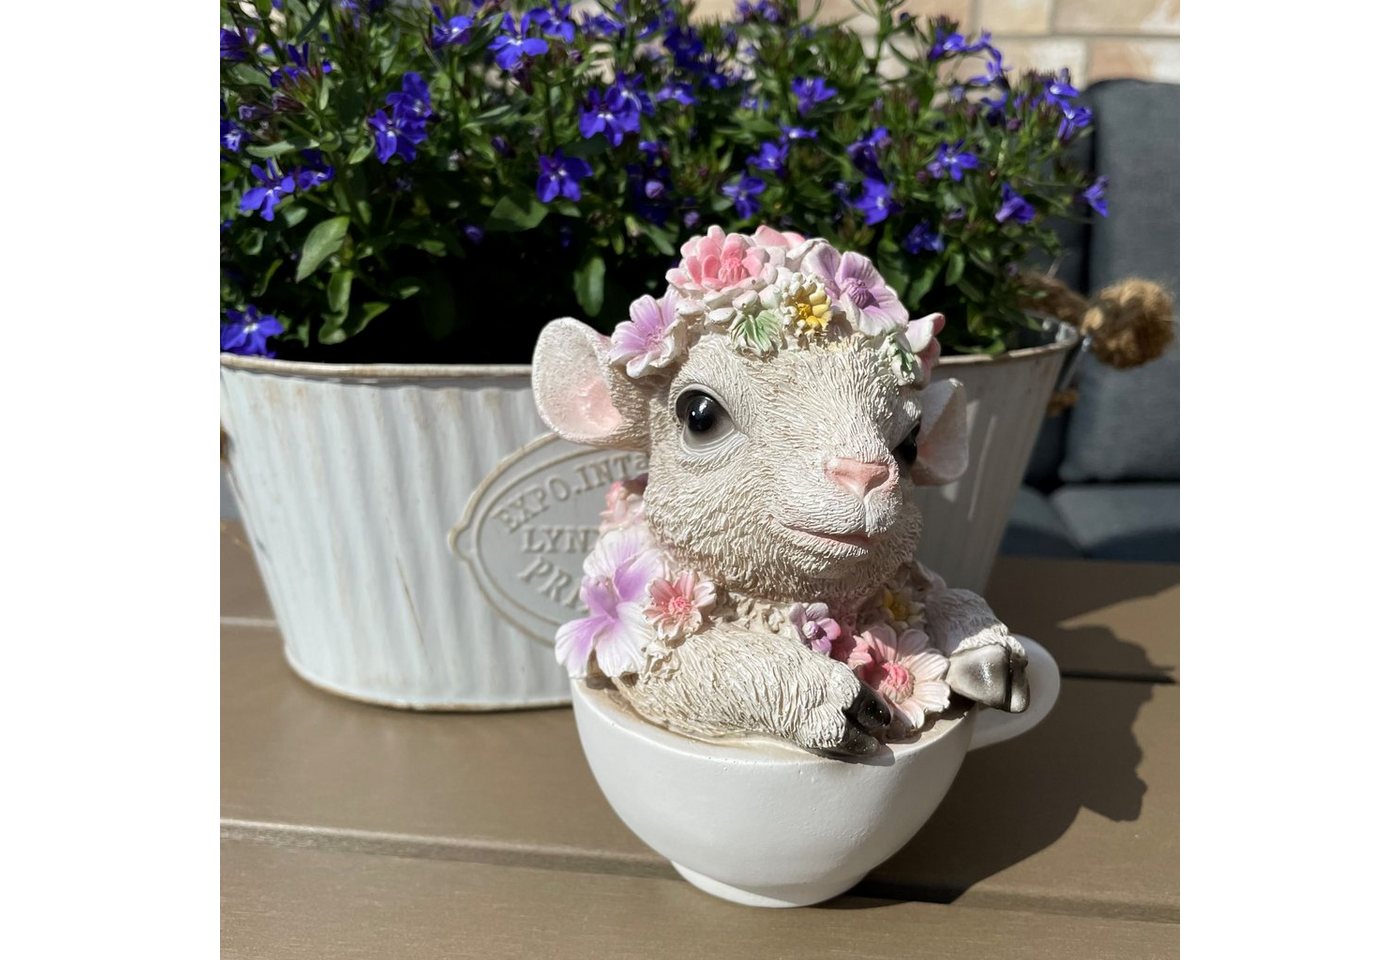 Online-Fuchs Gartenfigur süßes Lamm mit Blumen verziert in Tasse, (Polyresin), Maße des Tiers ca. 15 cm hoch und 11 x 10 cm breit, Schaf von Online-Fuchs